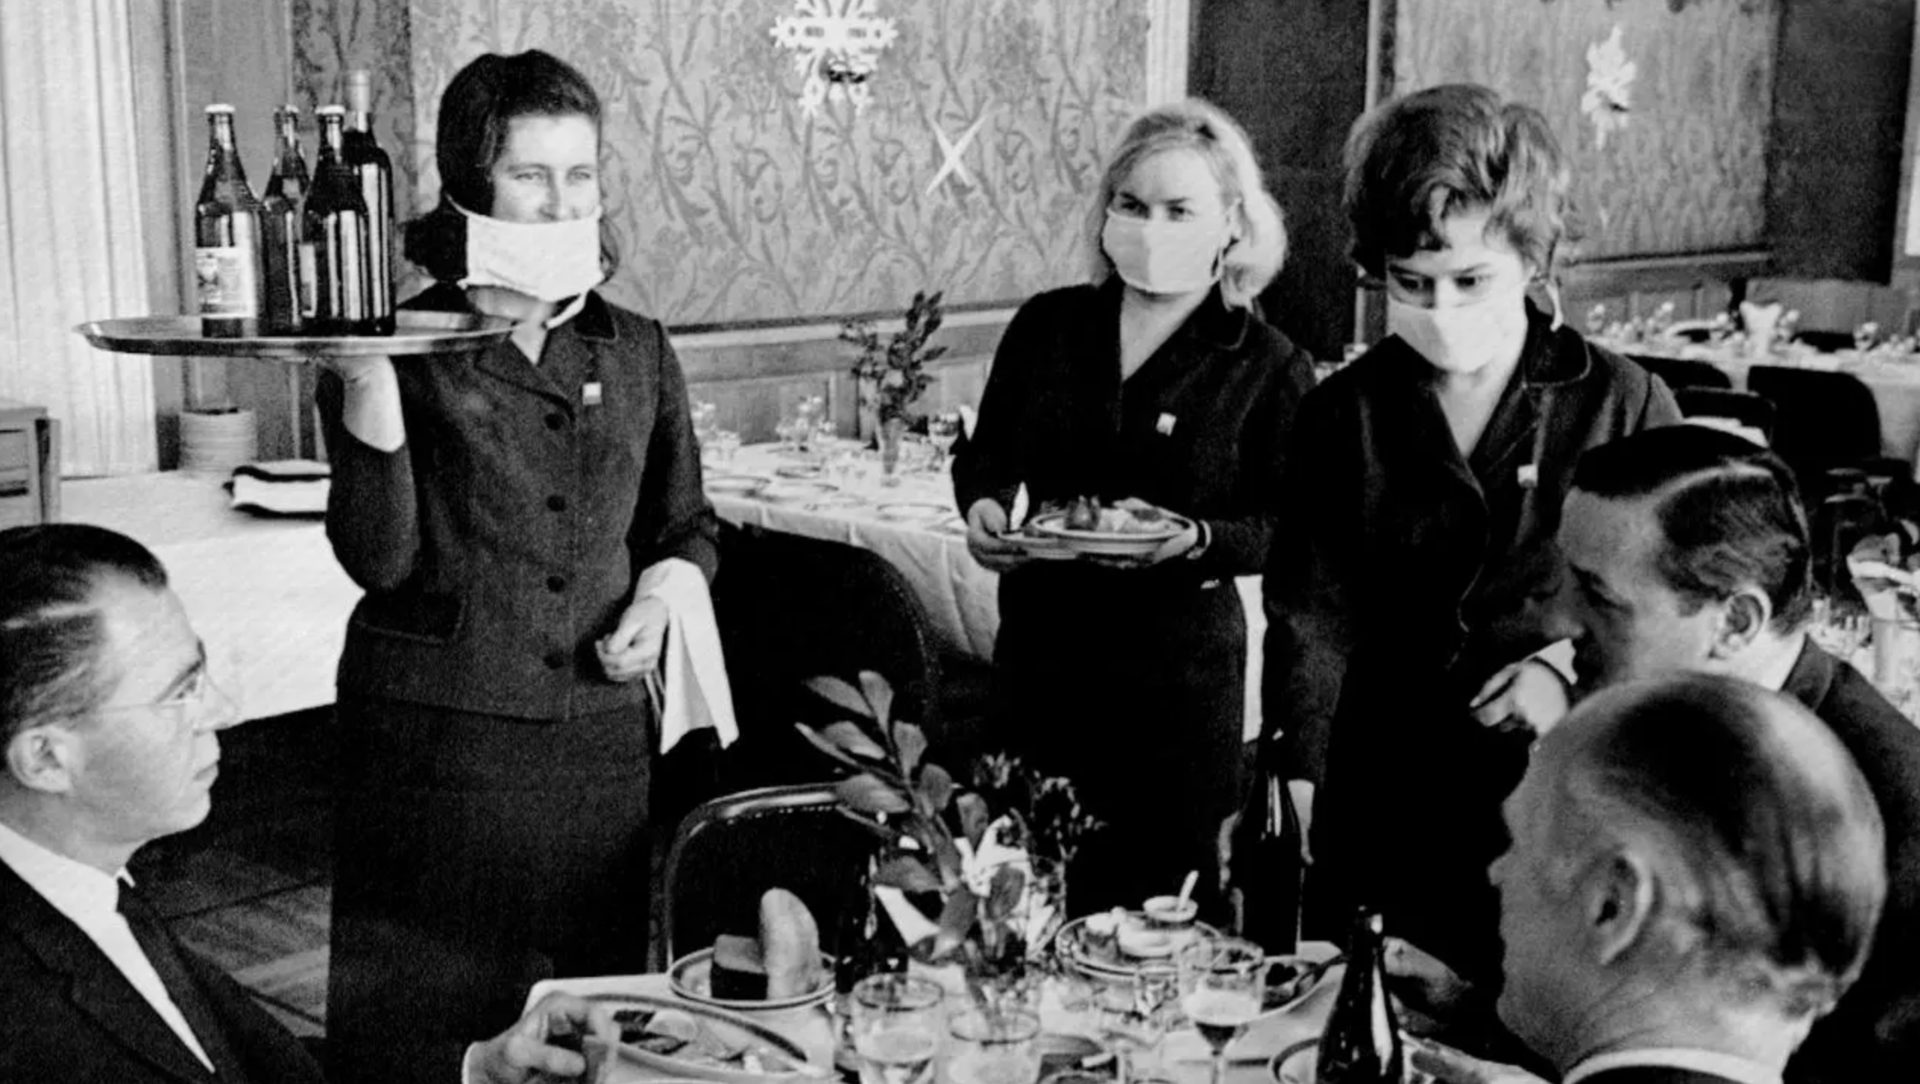 Гостиница "Националь" в Москве, январь 1969 года